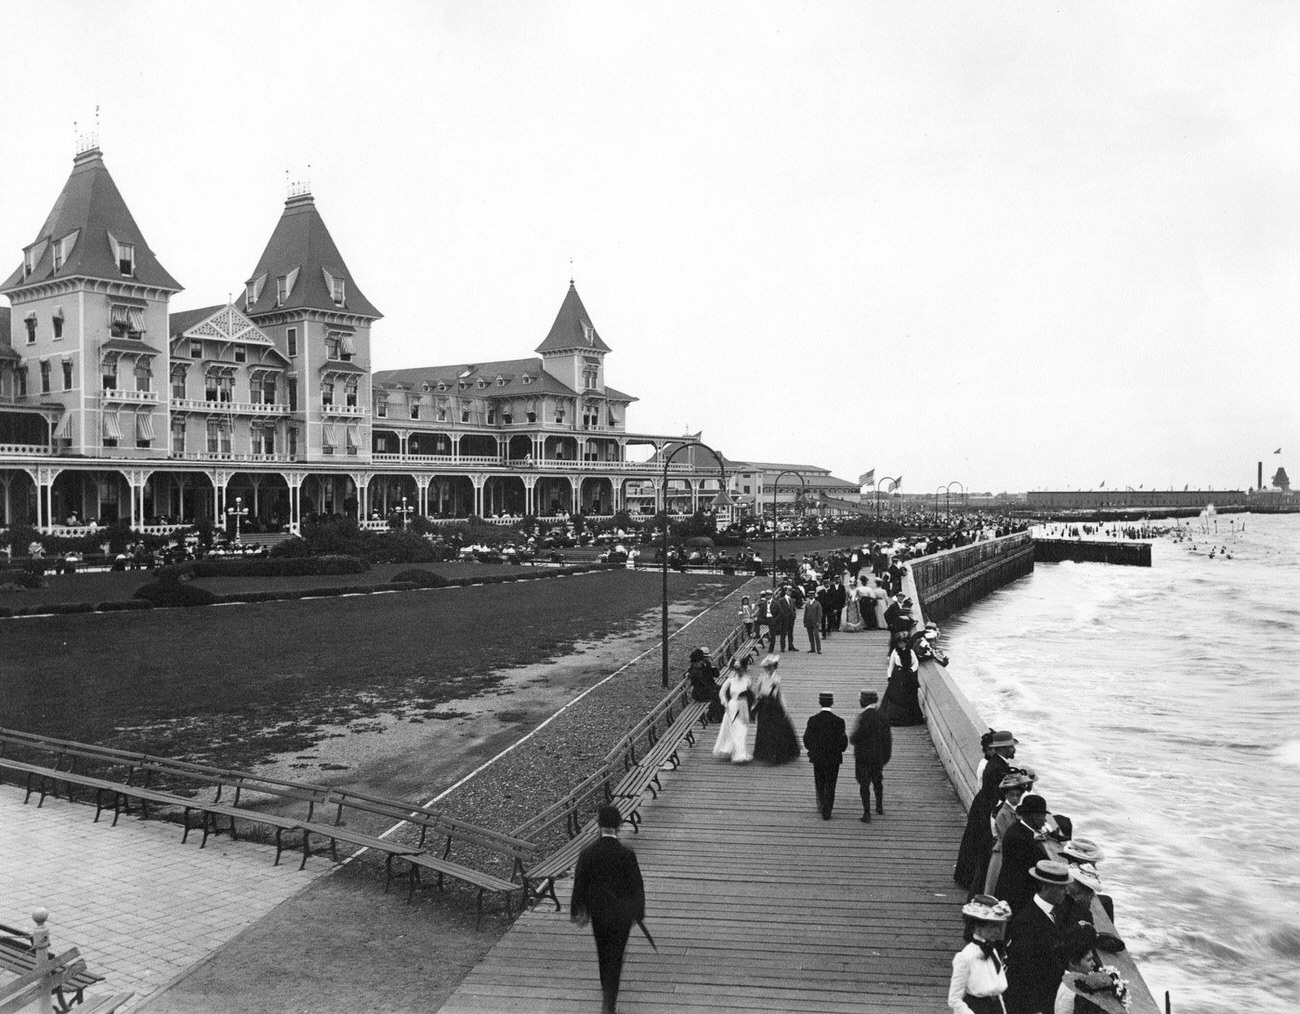 Brighton Beach Hotel And Boardwalk, Brooklyn, 1895.